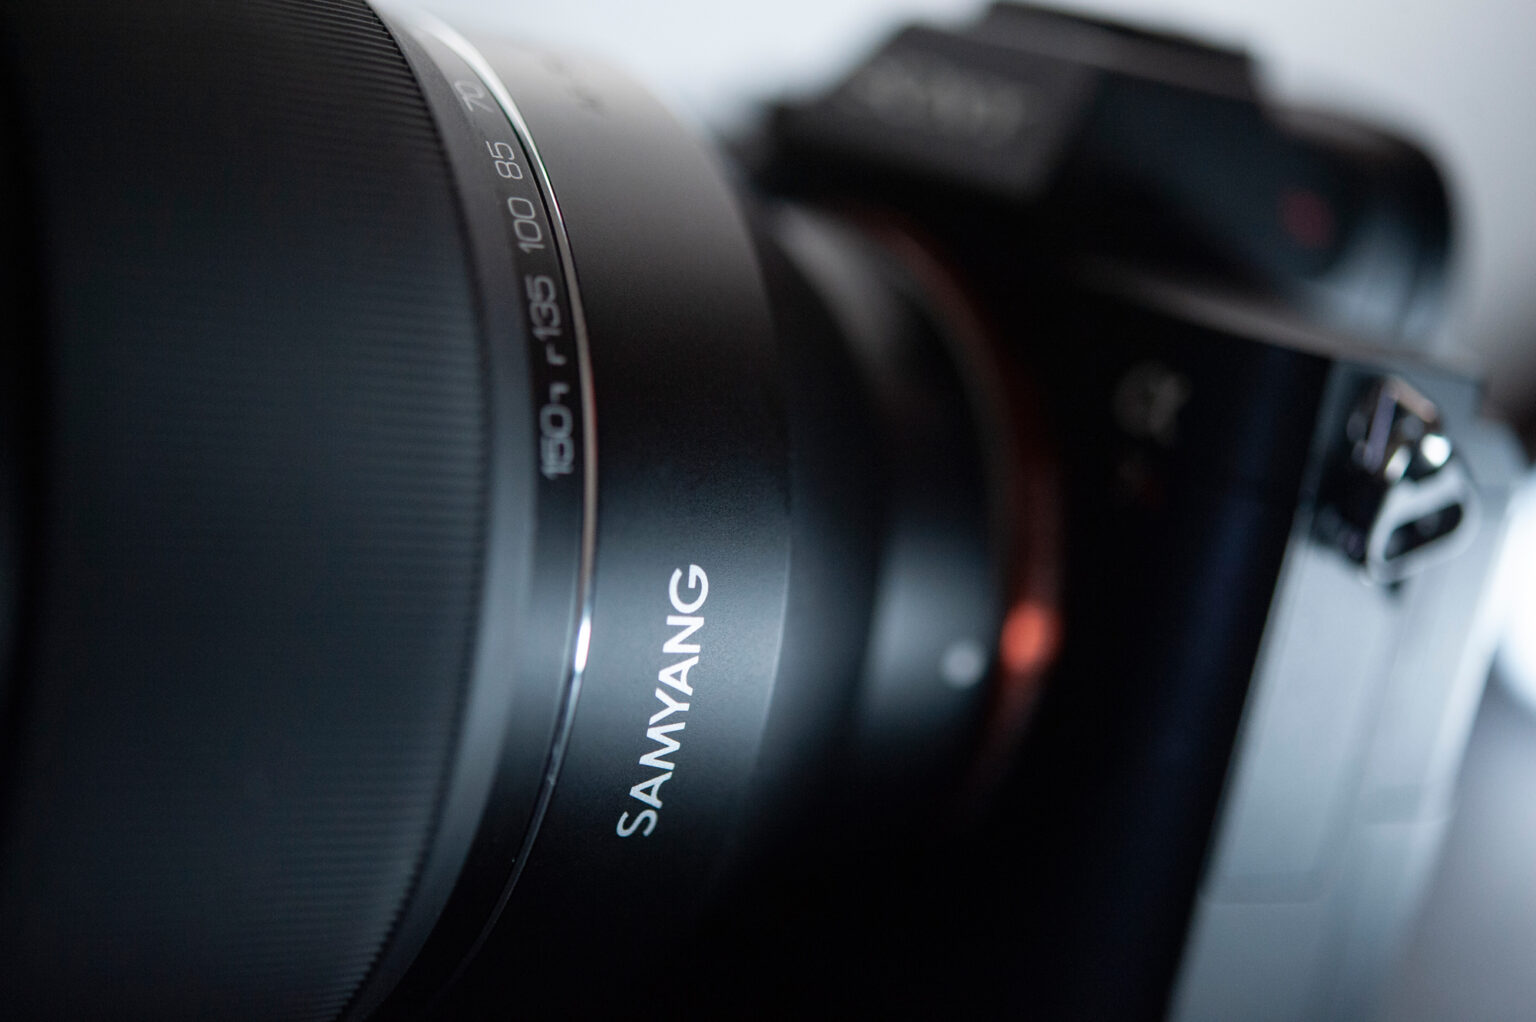 Prezentujemy zdjęcia obiektywu Samyang AF 35-150mm F2-2.8 FE w asyście używanego bezlusterkowca Sony A7R III